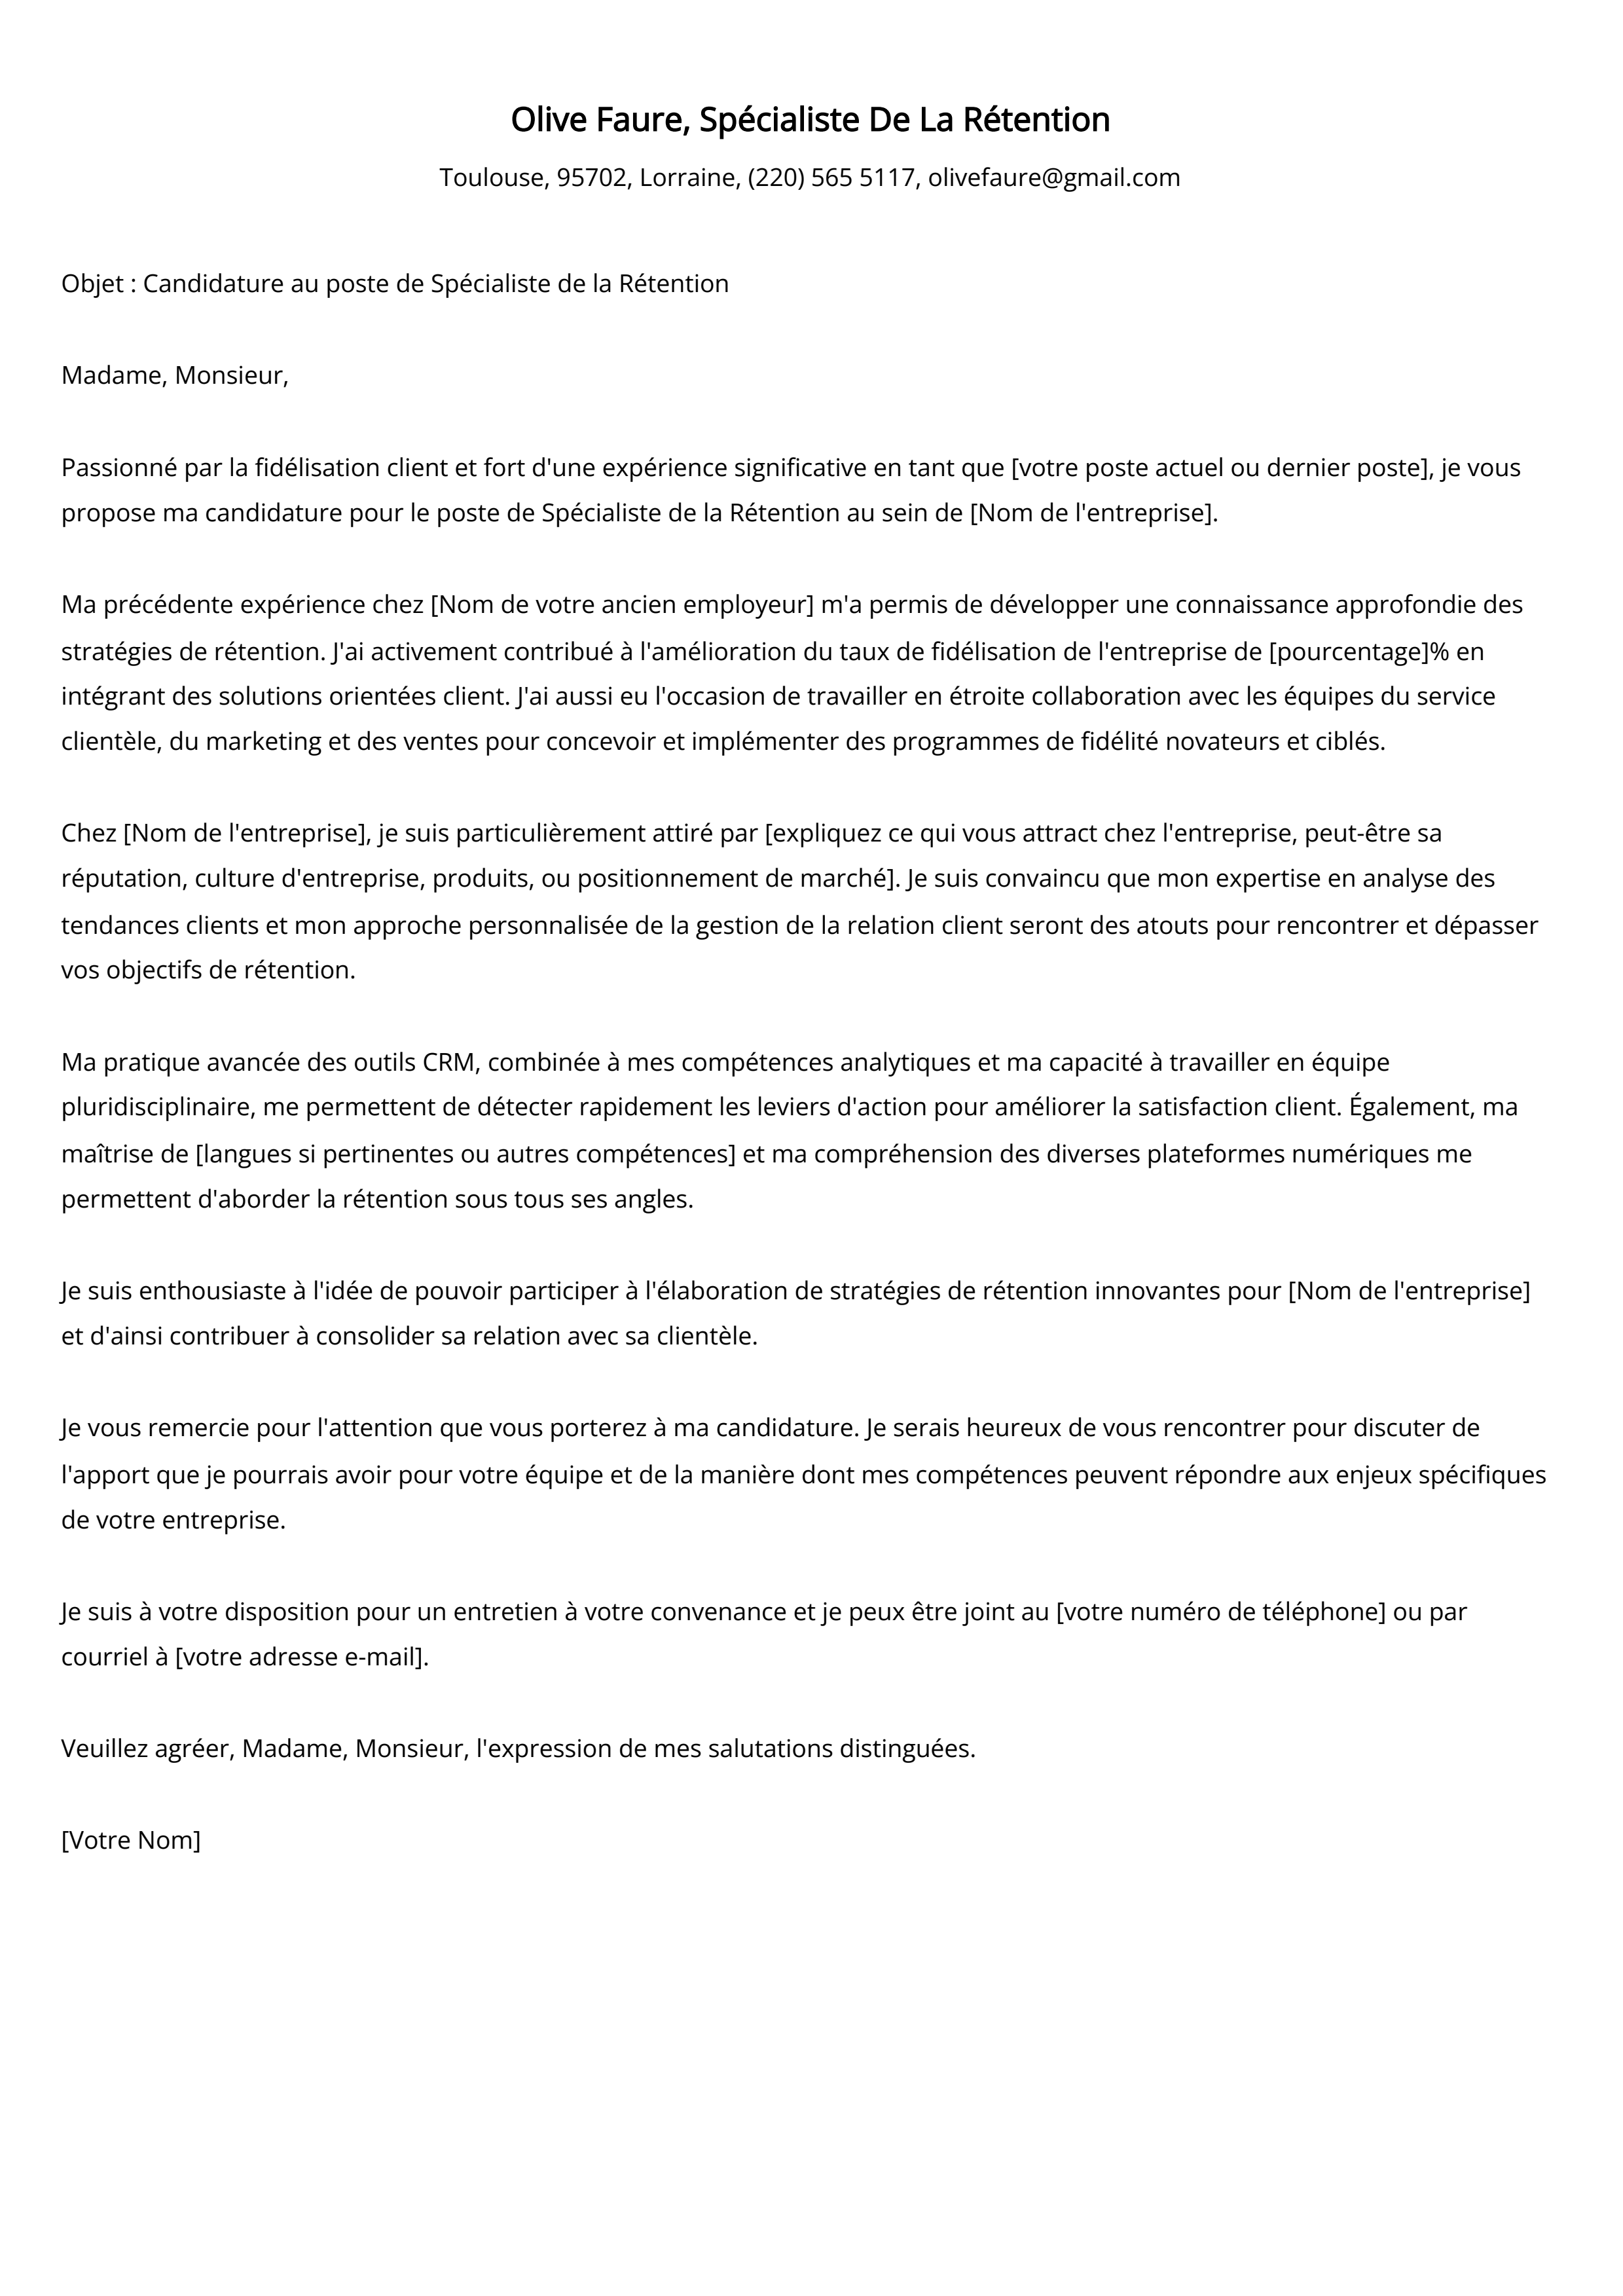 Spécialiste De La Rétention Cover Letter Example